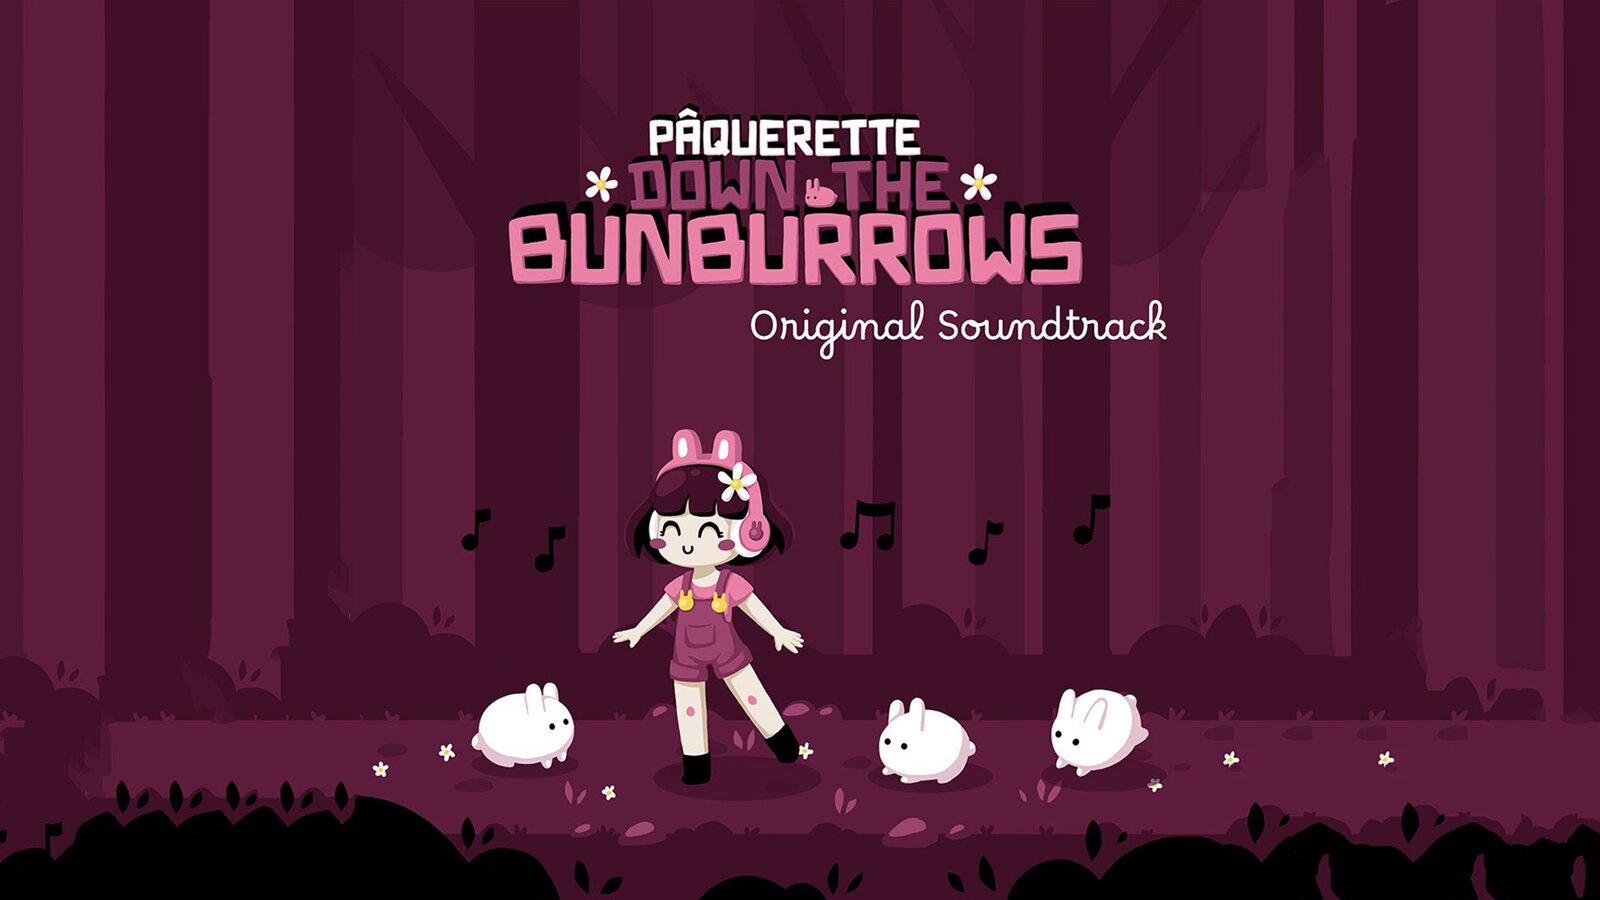 Paquerette Down the Bunburrows - Soundtrack